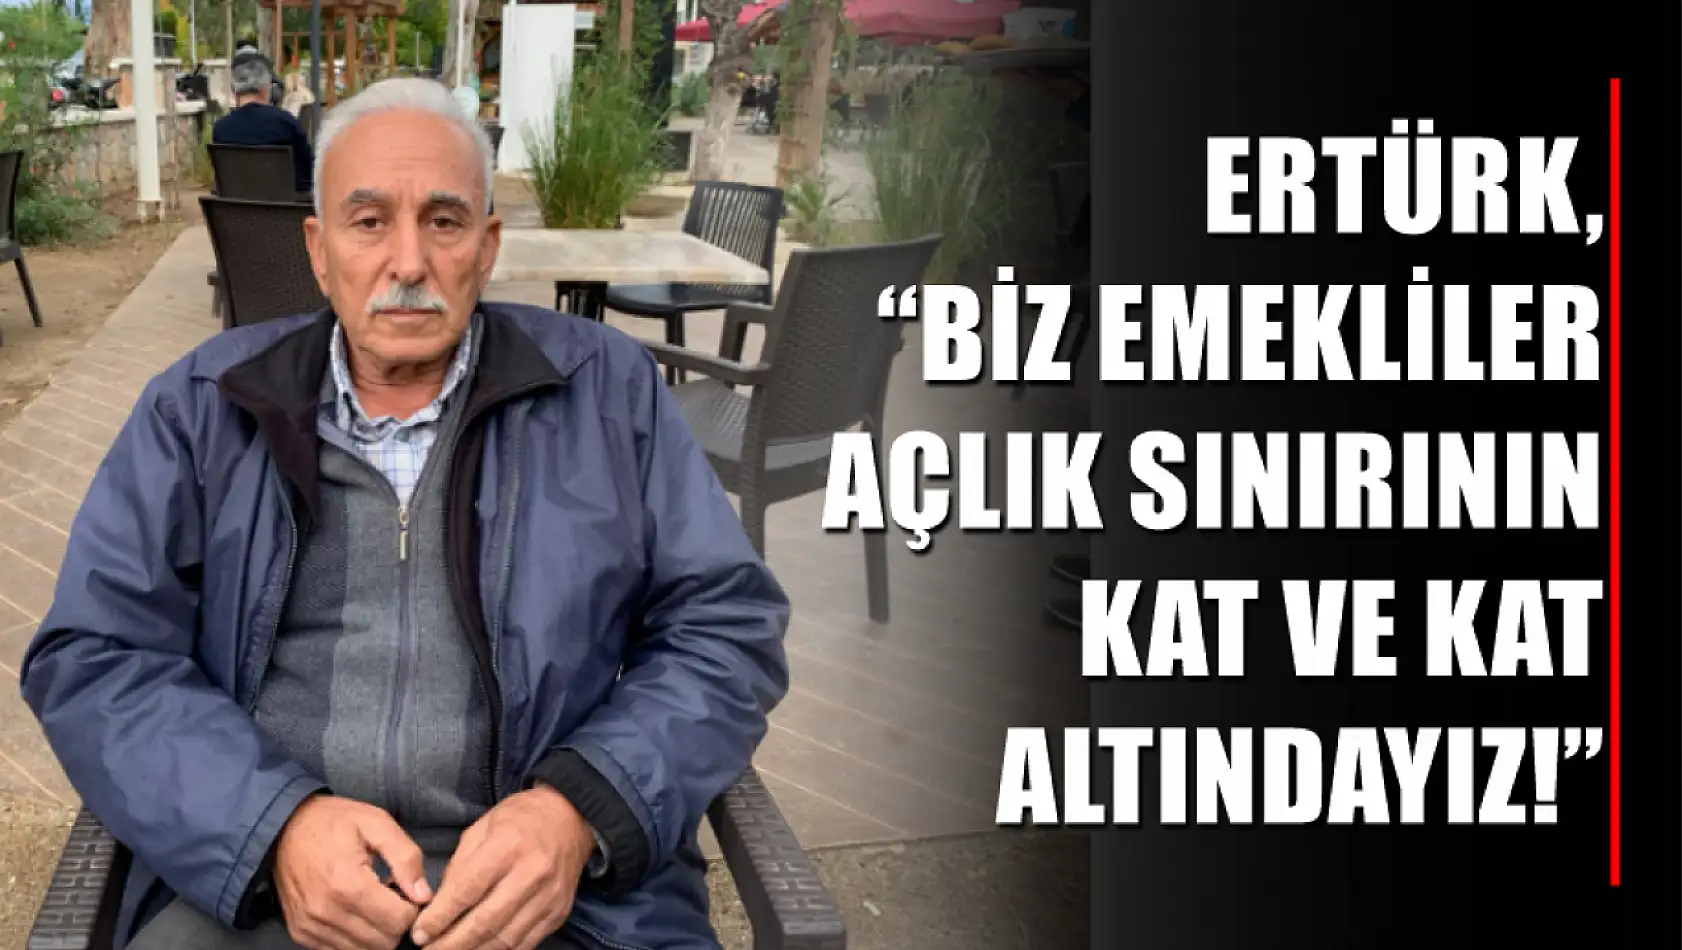 Ertürk, 'Biz emekliler açlık sınırının kat ve kat altındayız!'